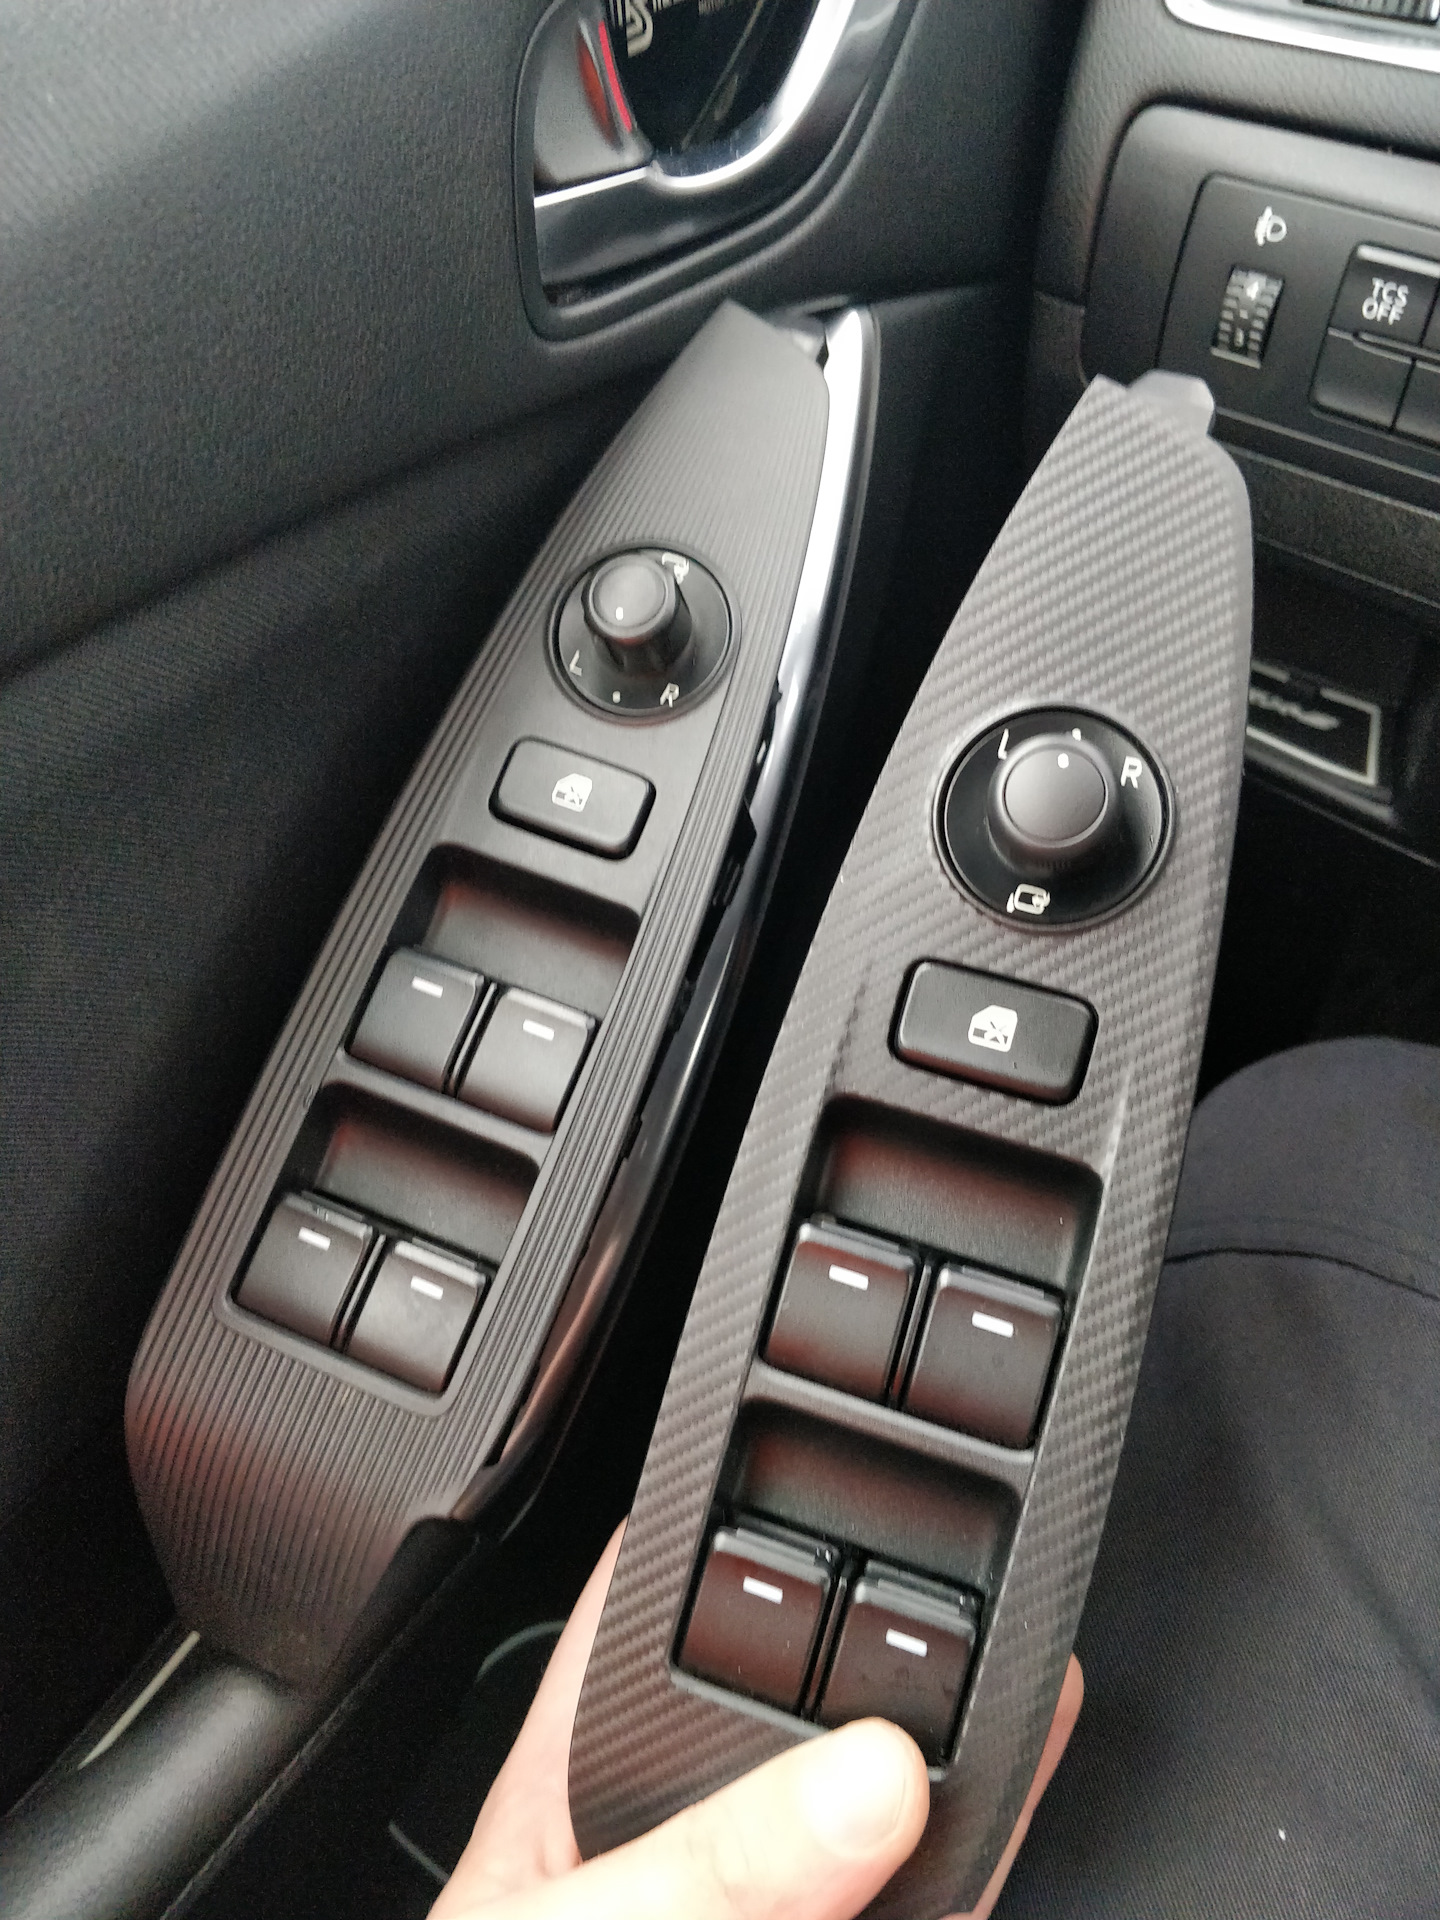 Складывание зеркал мазда сх 5. Mazda cx5 2013 блок управления стеклоподъемниками. Блок управления стеклоподъемниками Mazda 6 2013. Кнопки стеклоподъёмников Mazda CX-5 2021. Блок управления стеклоподъемниками Мазда СХ 5 2017.